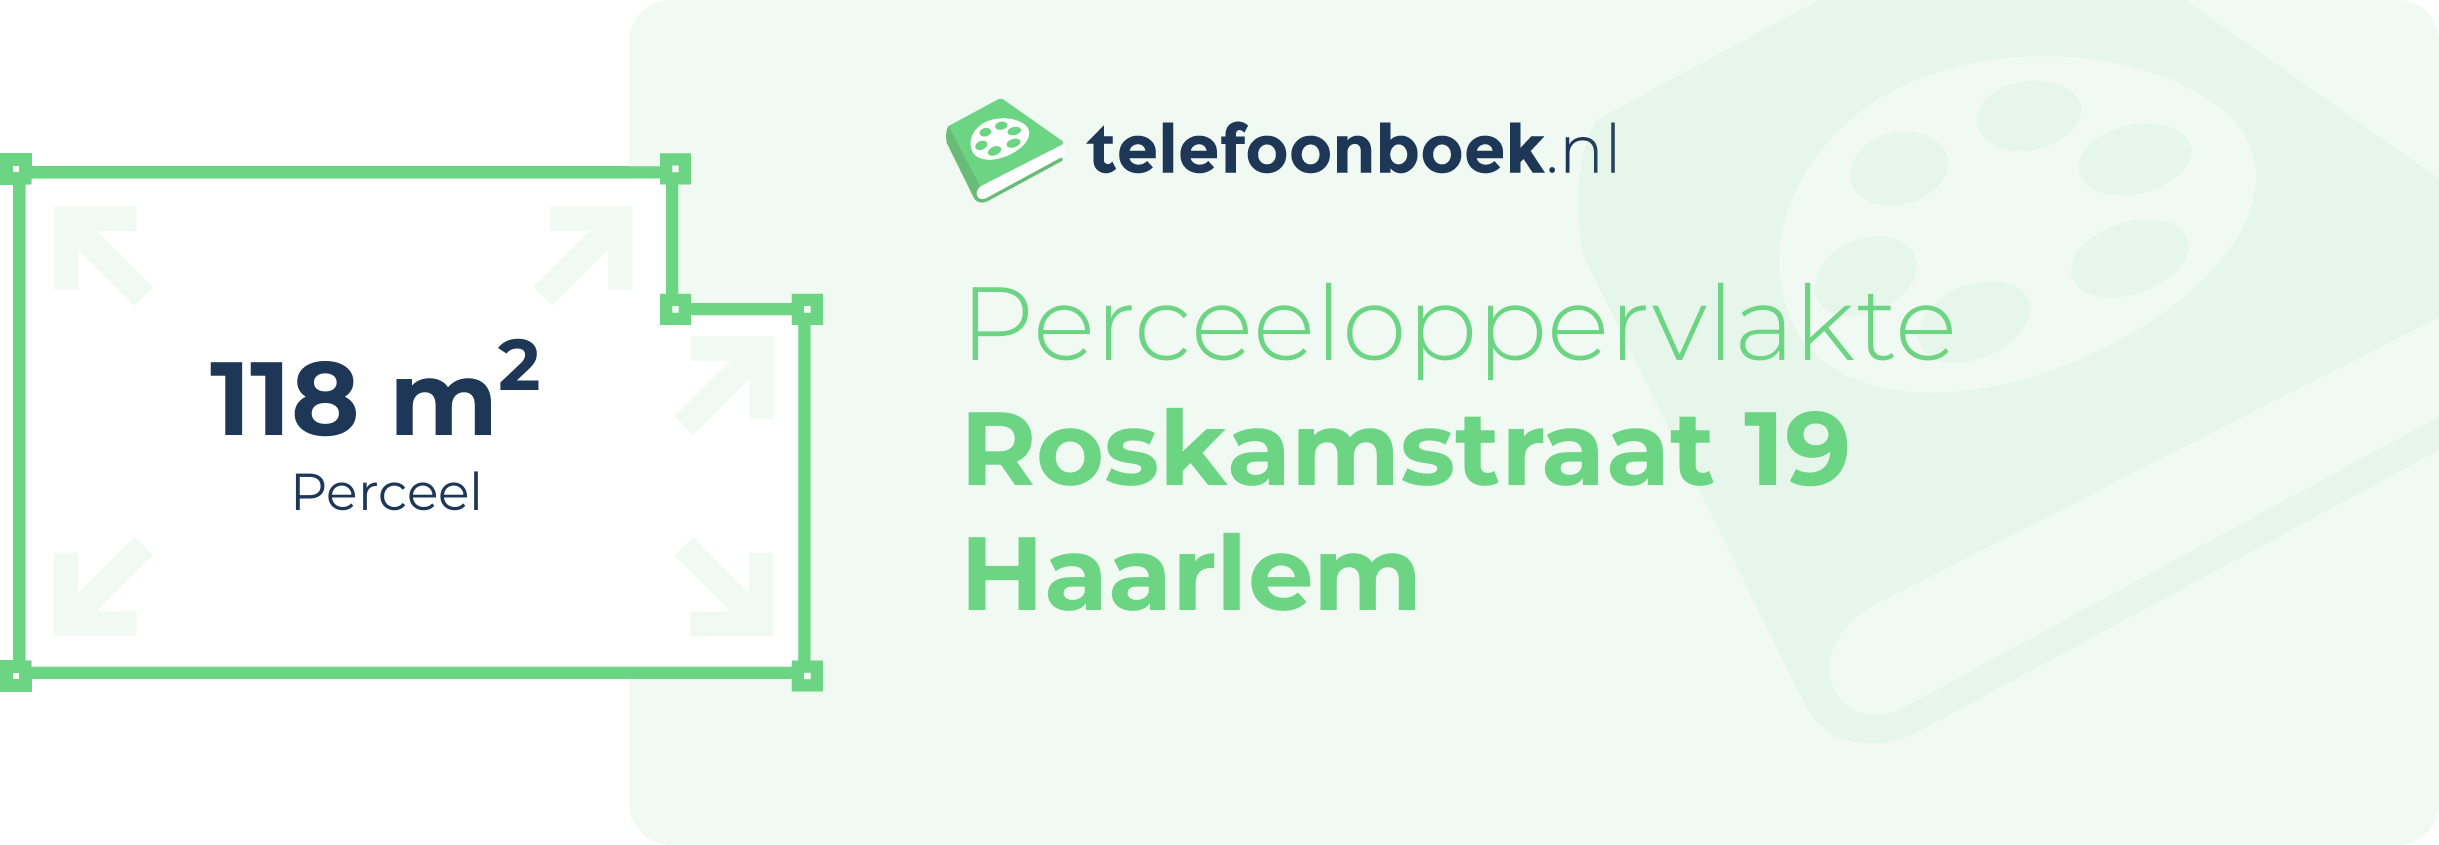 Perceeloppervlakte Roskamstraat 19 Haarlem